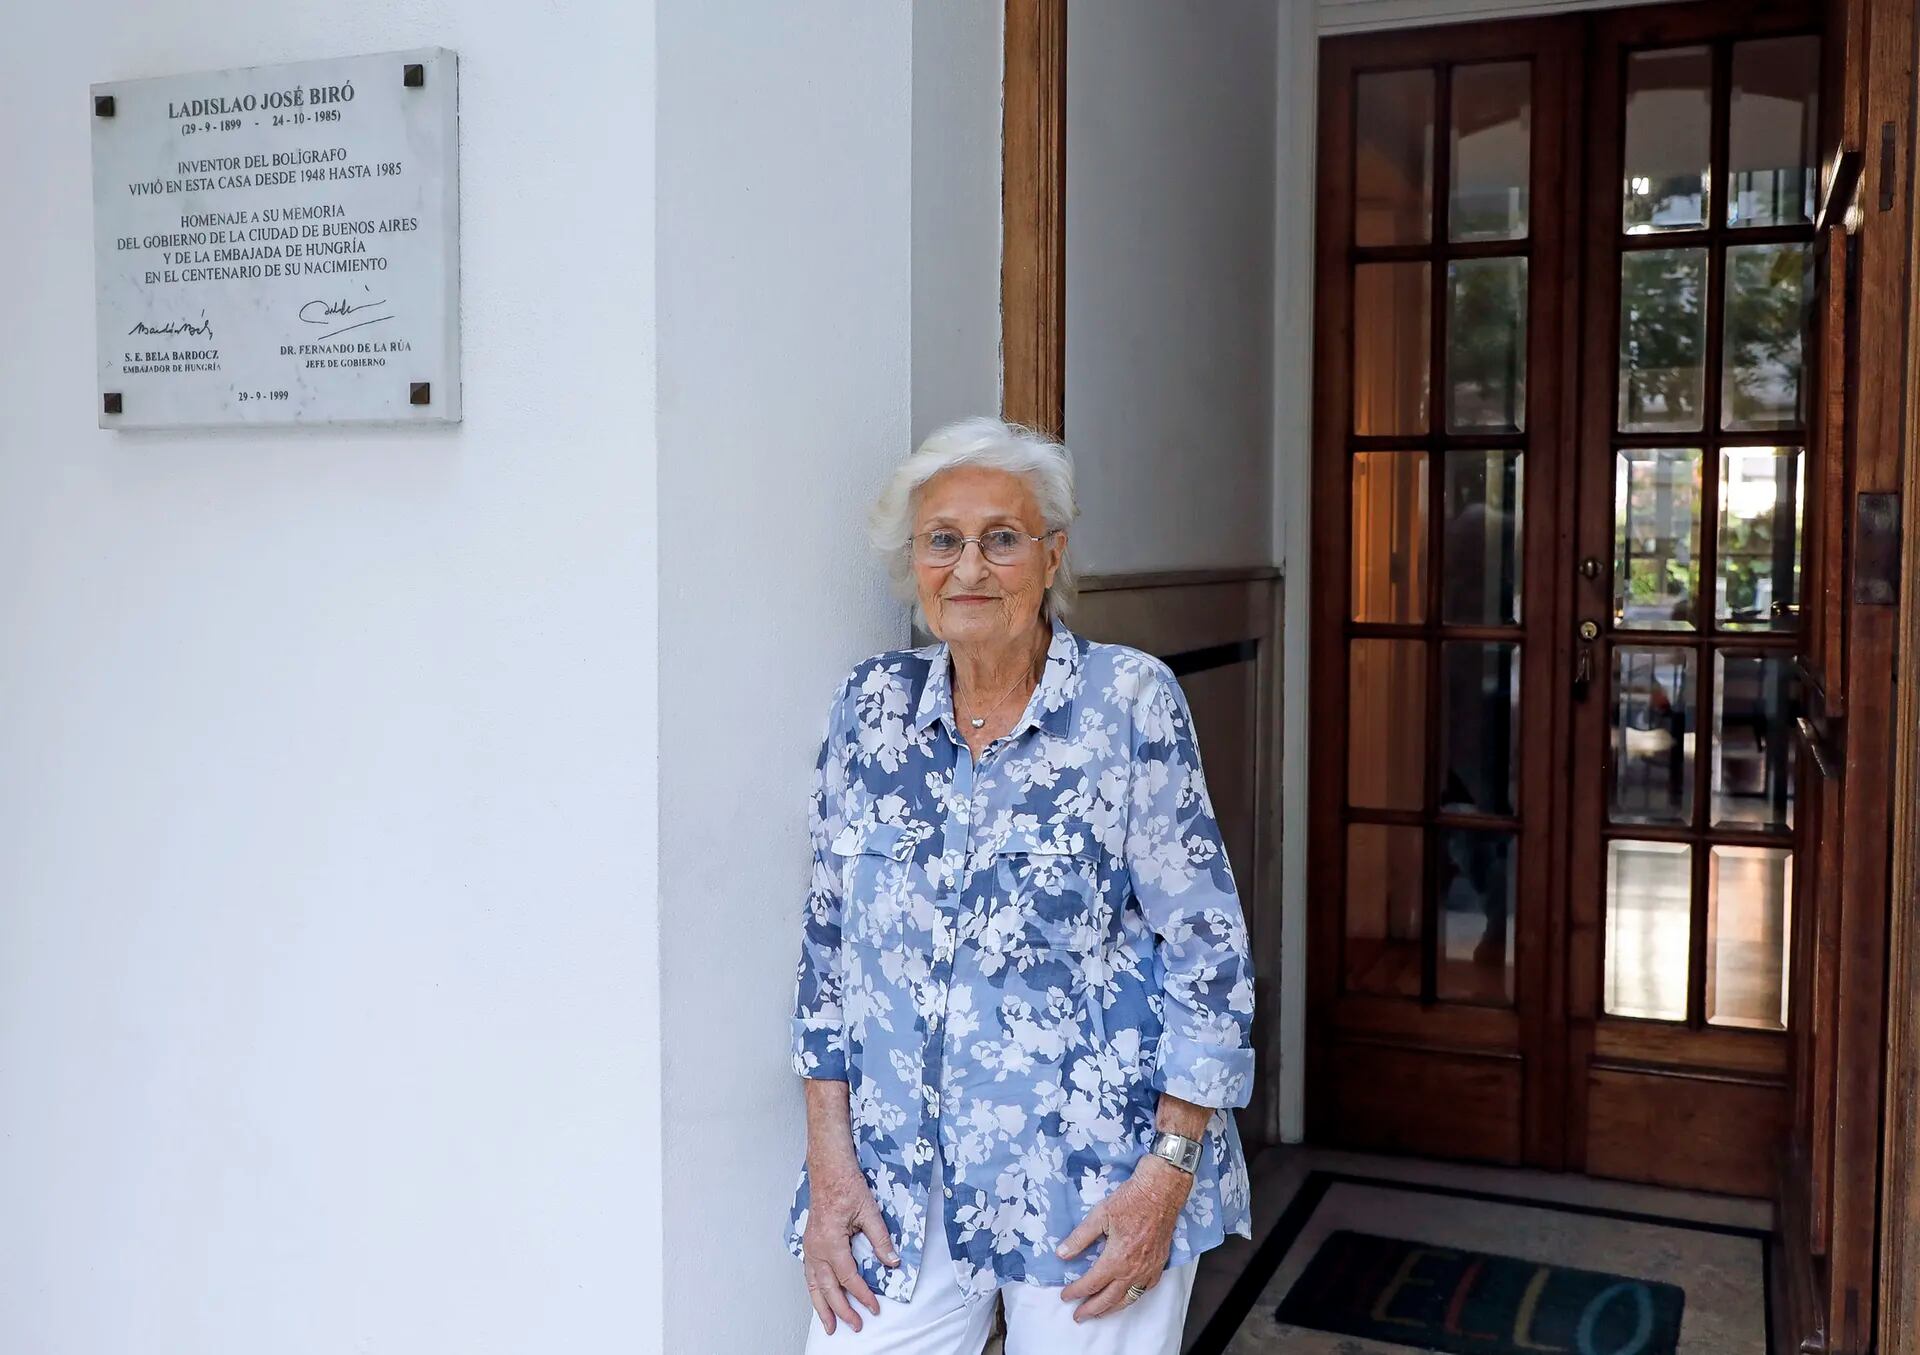 Mariana Biro colocó una placa conmemorativa de su padre en la puerta de su casa, ubicada en una zona de casas inglesas de Colegiales